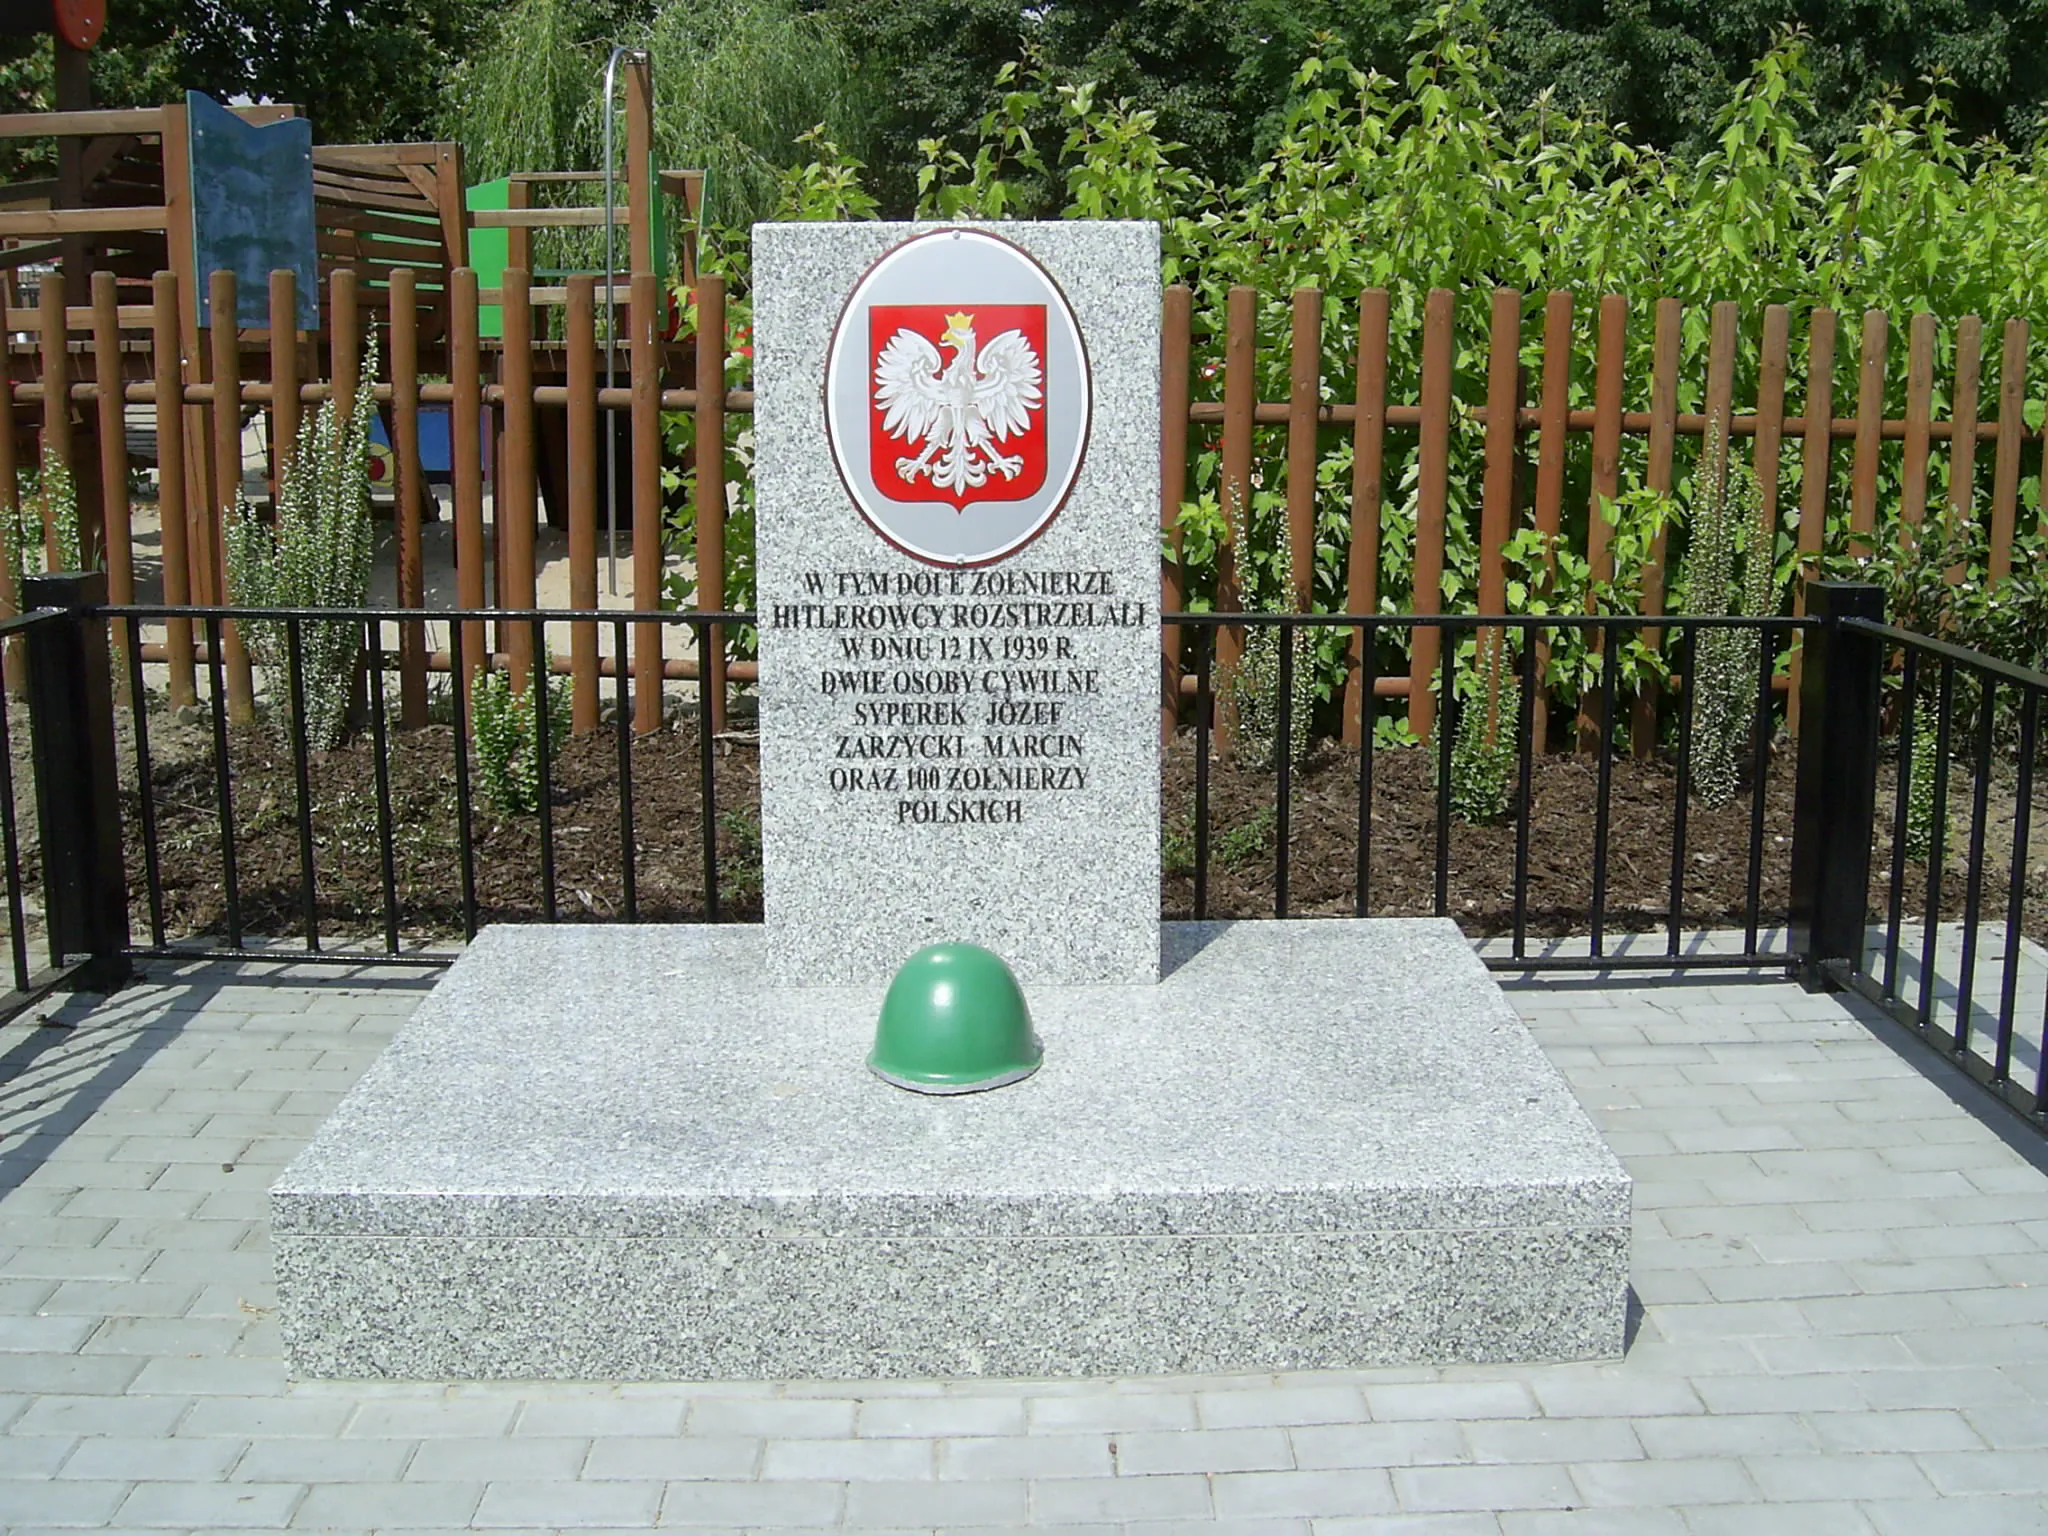 Photo showing: Parzniew, pomnik ku czci rozstrzelanych przez hitlerowców 12 IX 1939 - odnowiony w 2009